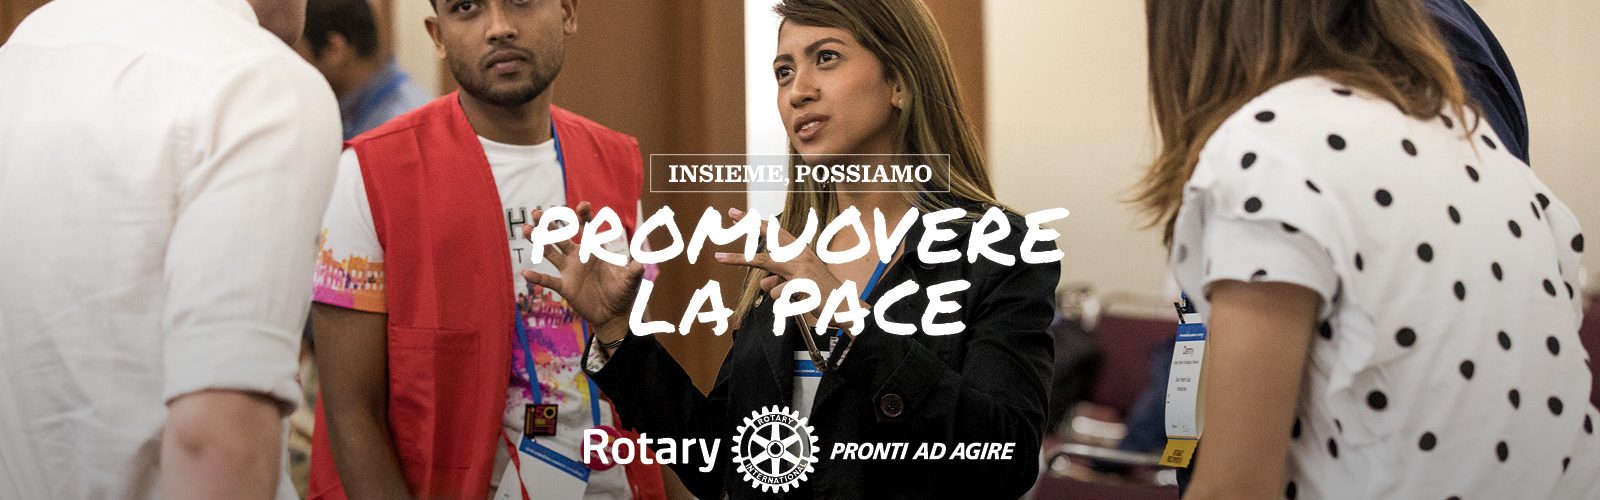 Rotary Club Aosta